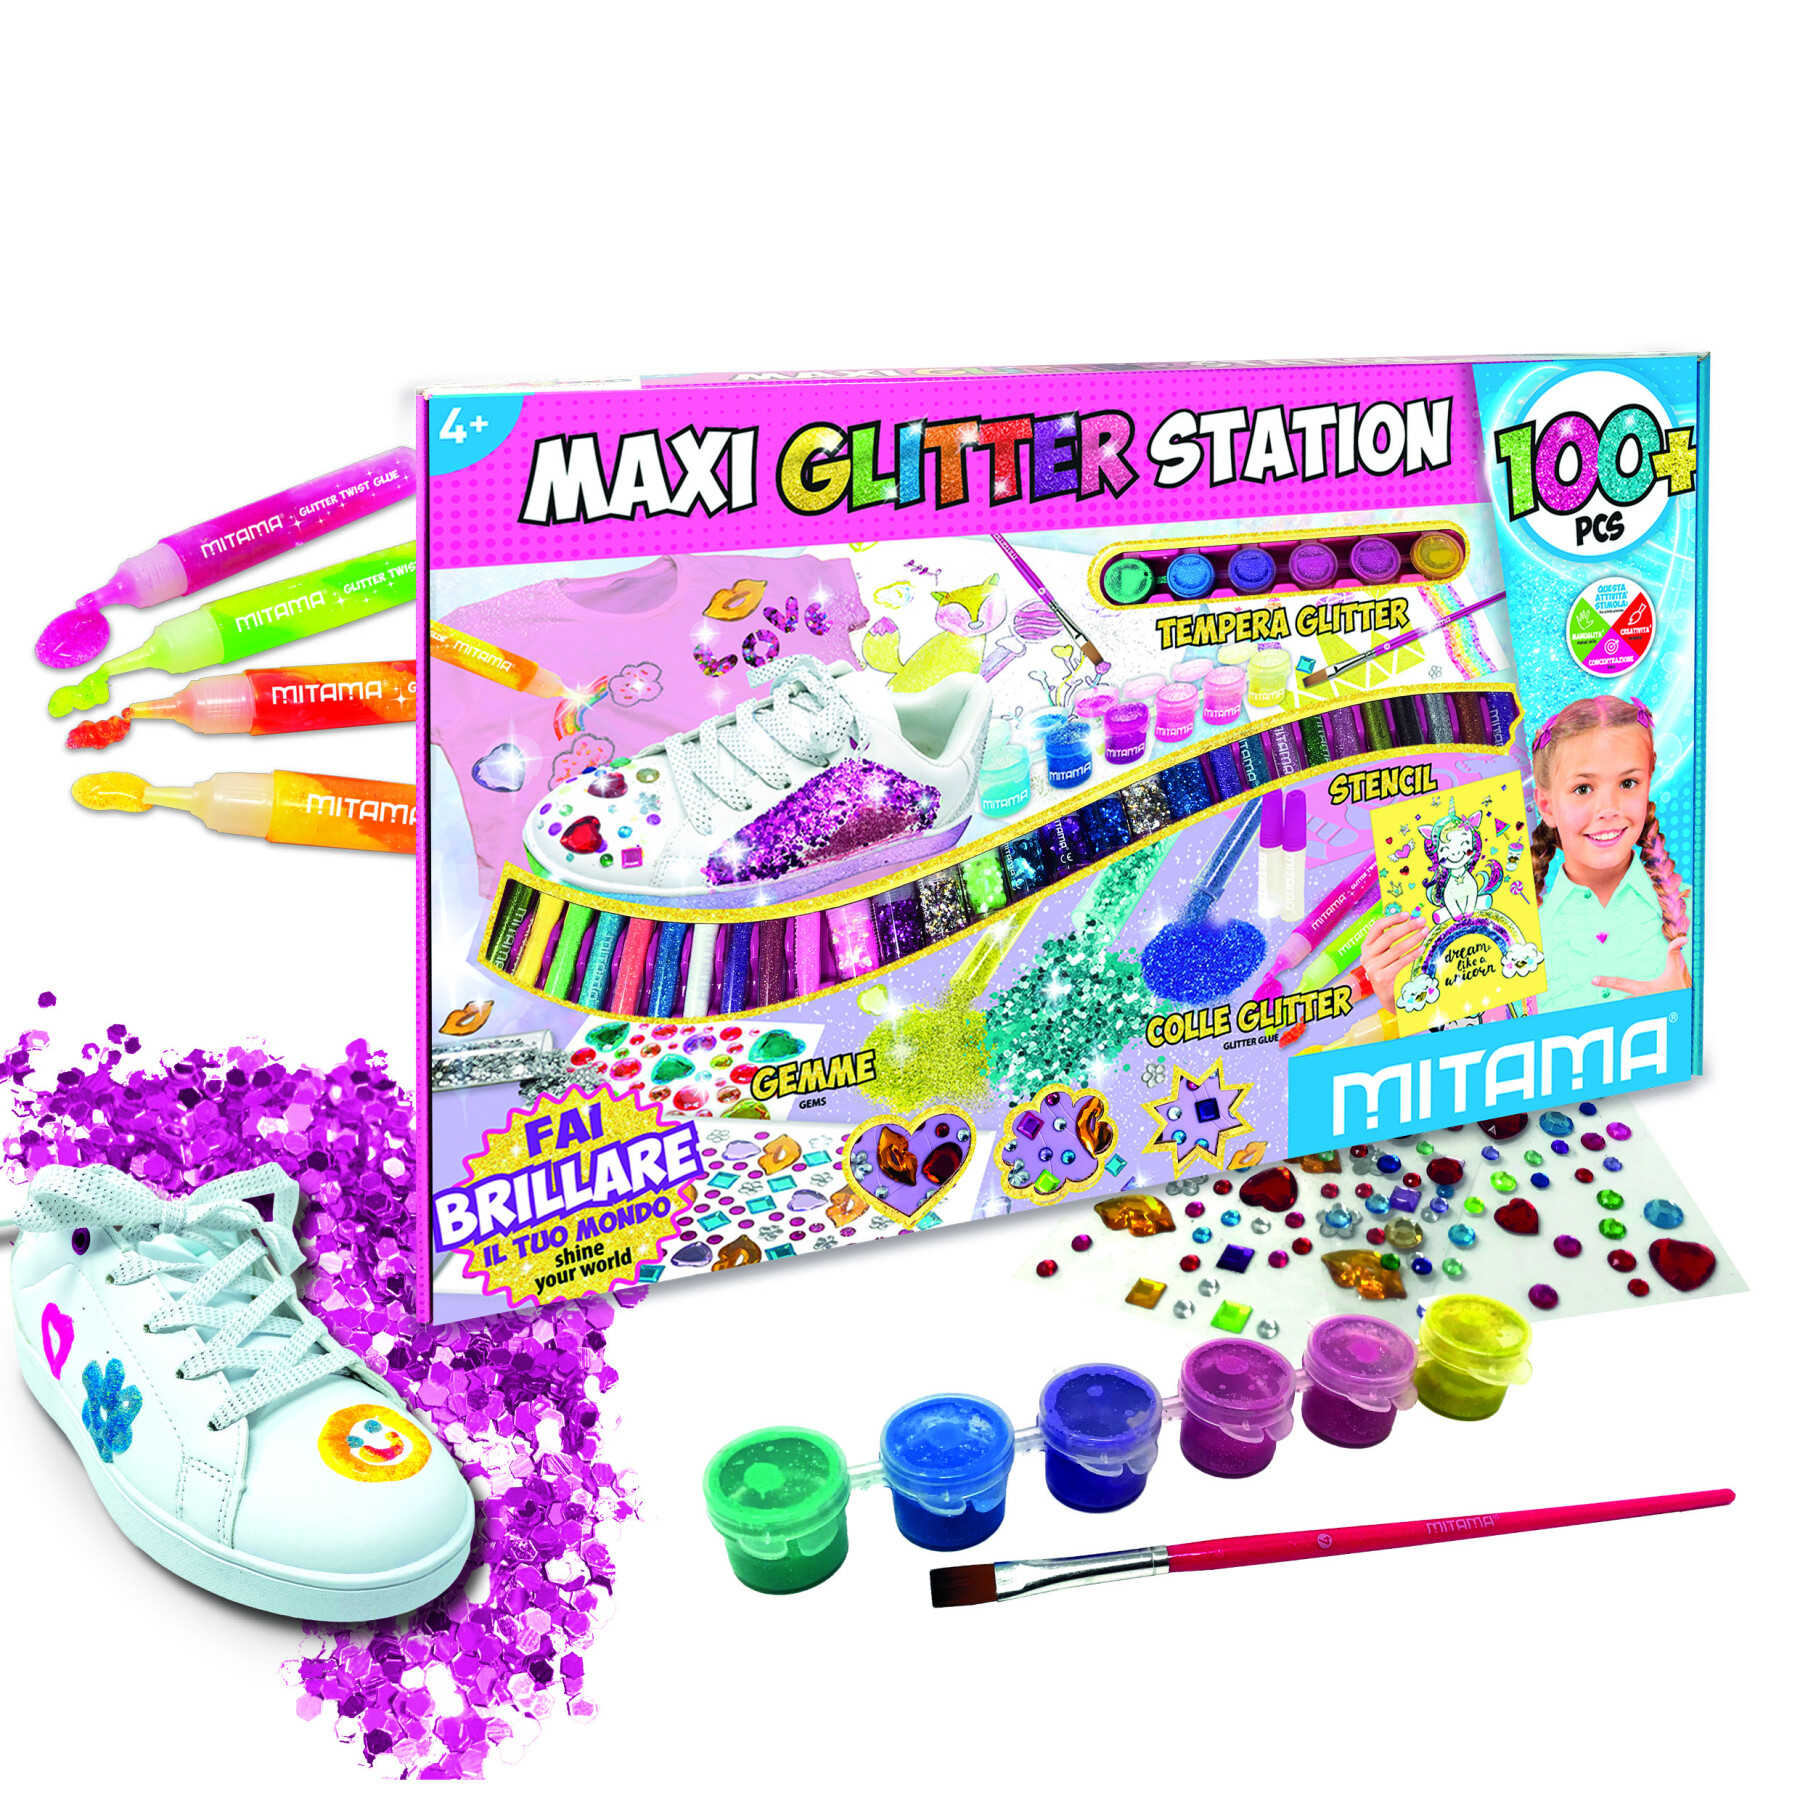 Maxi glitter station mitama 100 pezzi. contenuto : 29 polverine glitter, 6 tempera glitter, 1 pennello, 4 colle glitter, 3 colle per polverine glitter, 56 gemme, 4 stencil - 